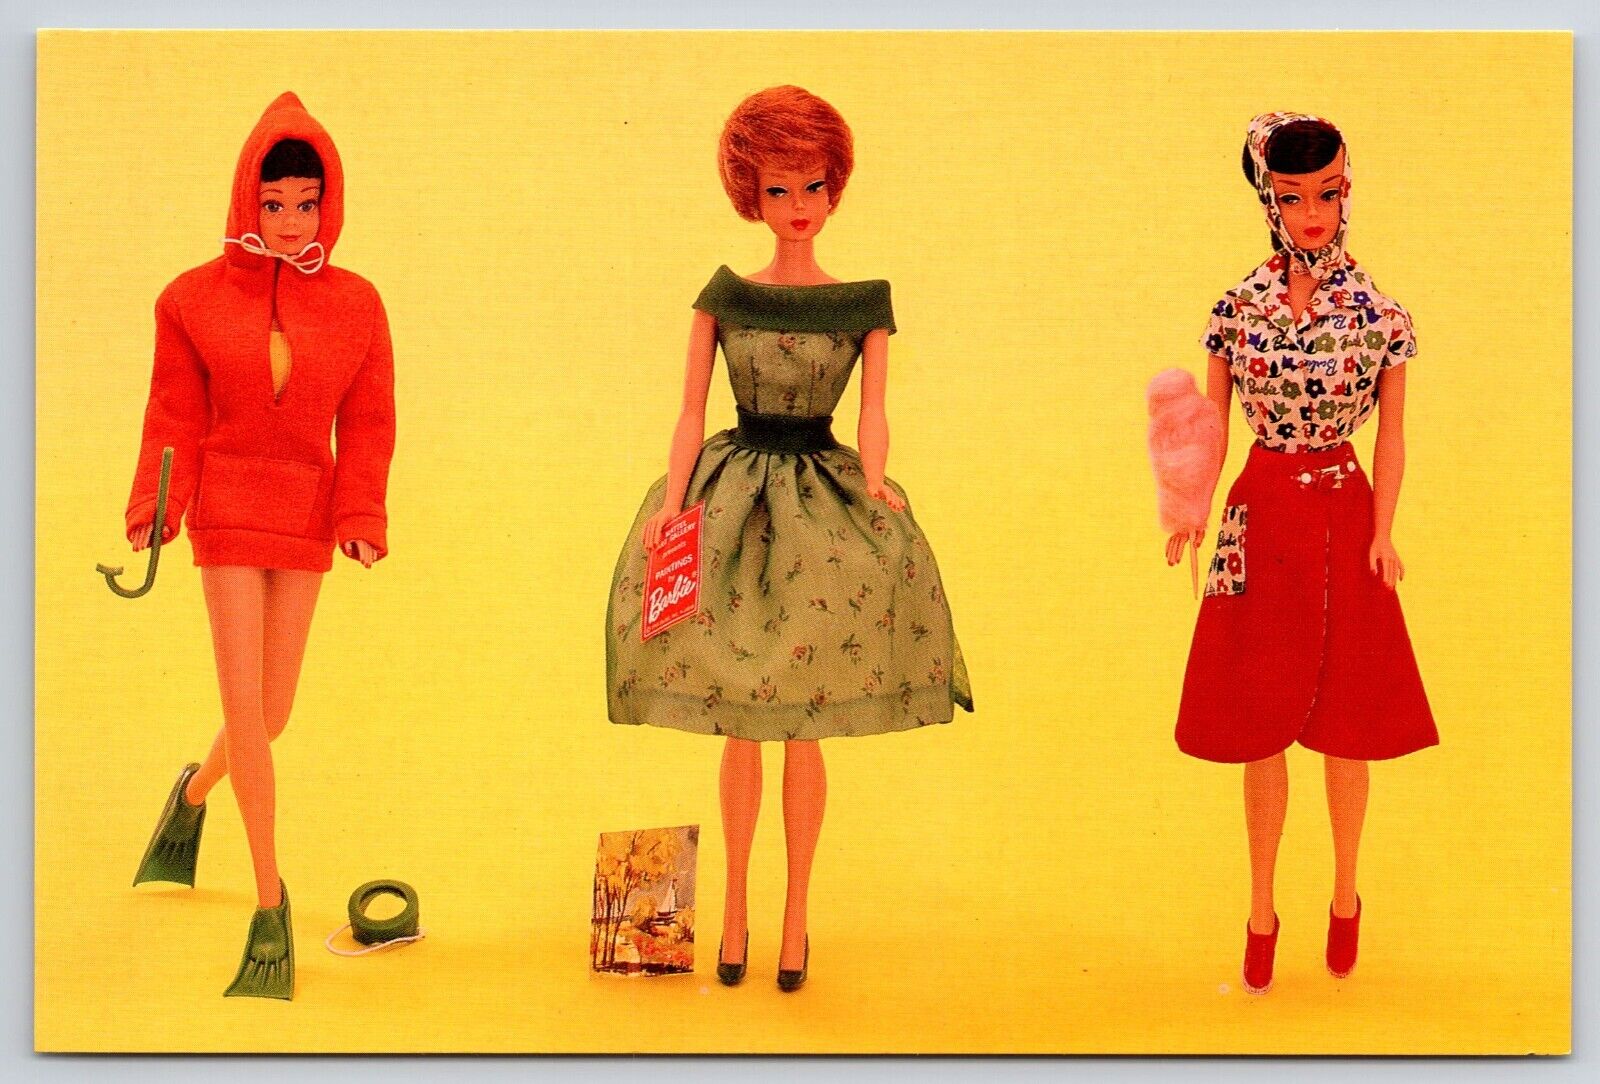 Nostalgic Barbie Doll 1965 Fashions Postcard Skin Diver Modern Art Fun at Fair